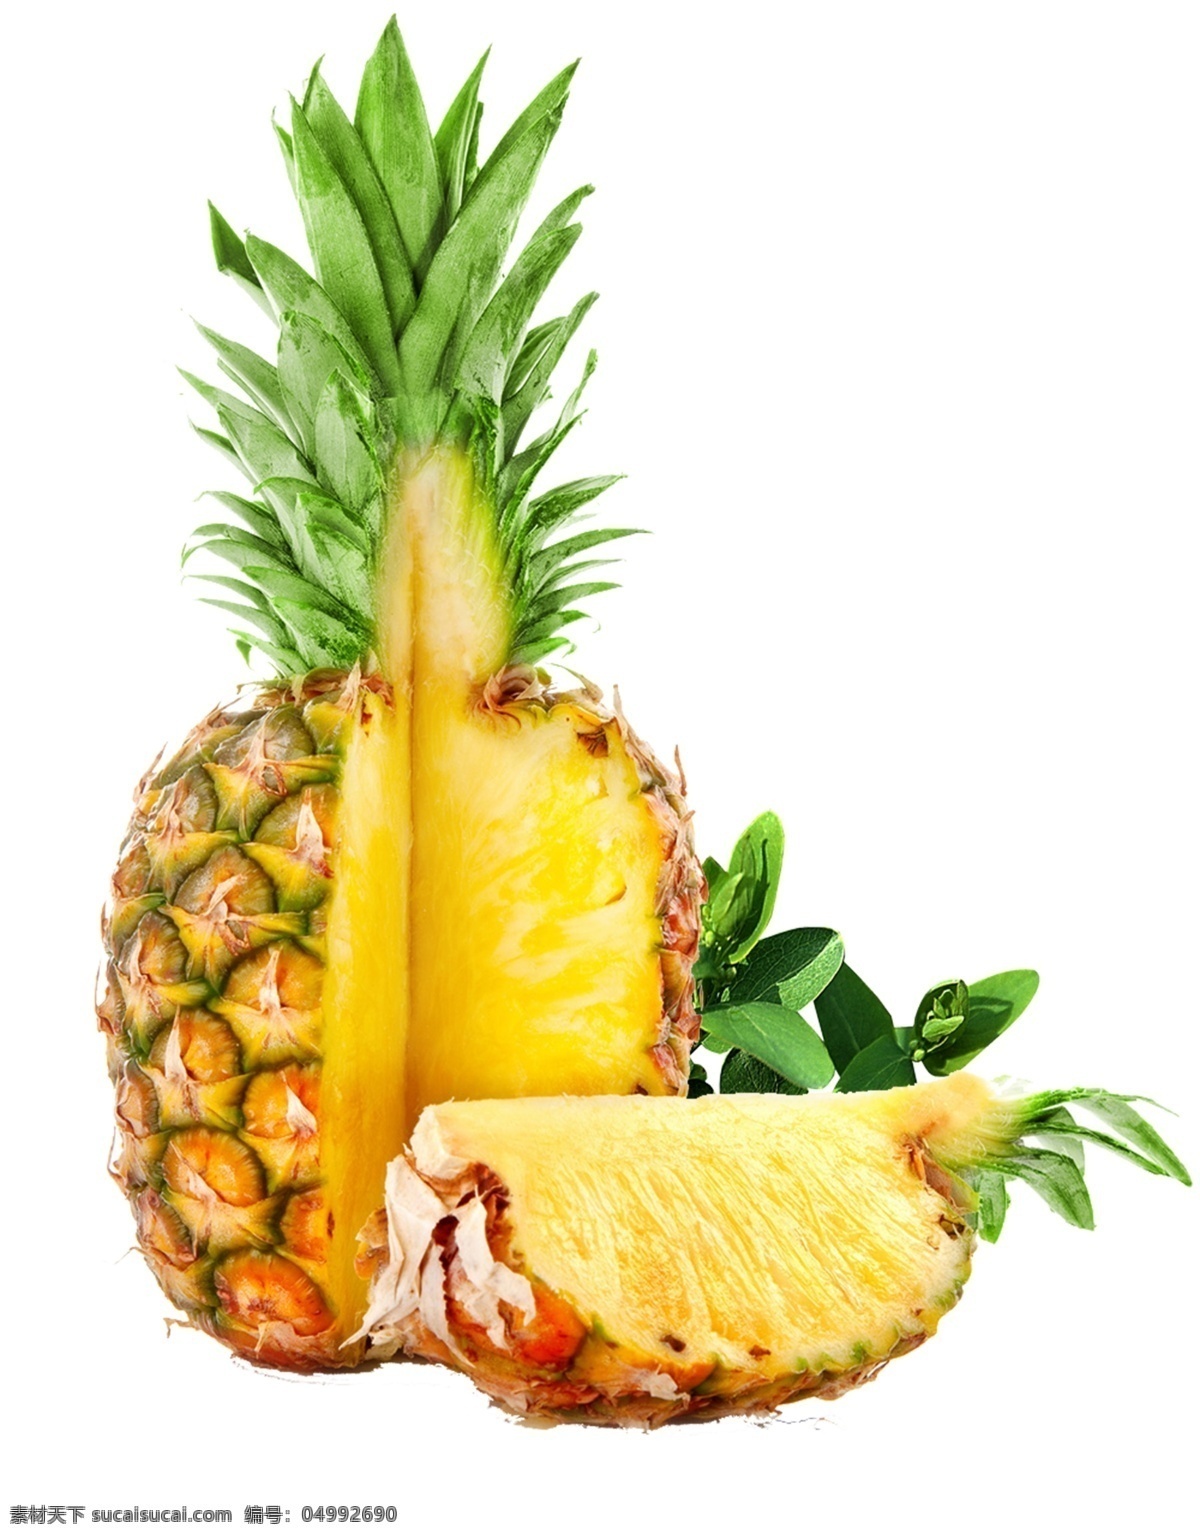 黄色 菠萝 图案 元素 菲律宾凤梨 释迦凤梨 菠萝基地 菠萝节 高清菠萝 海南凤梨 批发菠萝 菠萝专卖 菠萝照片 美味菠萝 超市菠萝